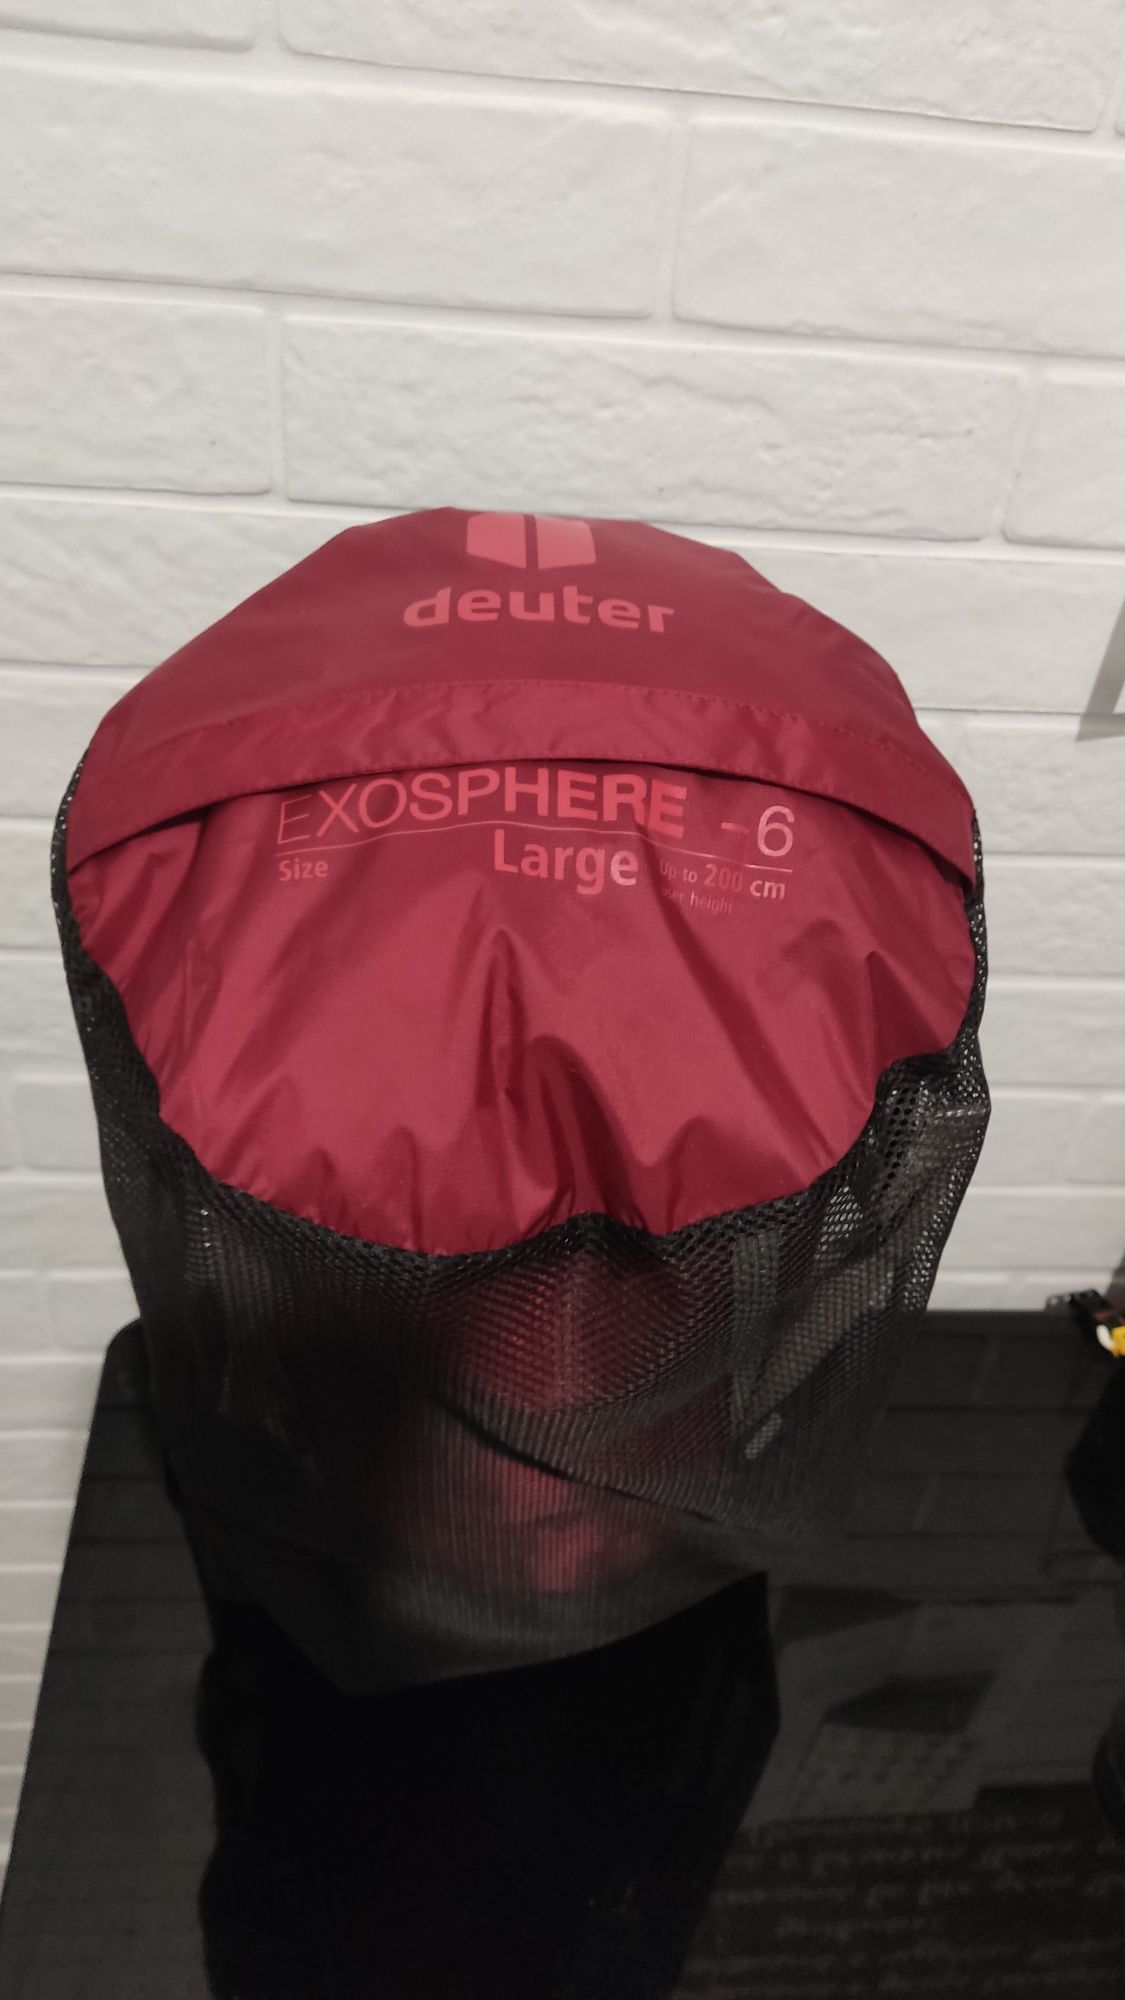 Спальный мешок Deuter exospxere -6 large 200 cm